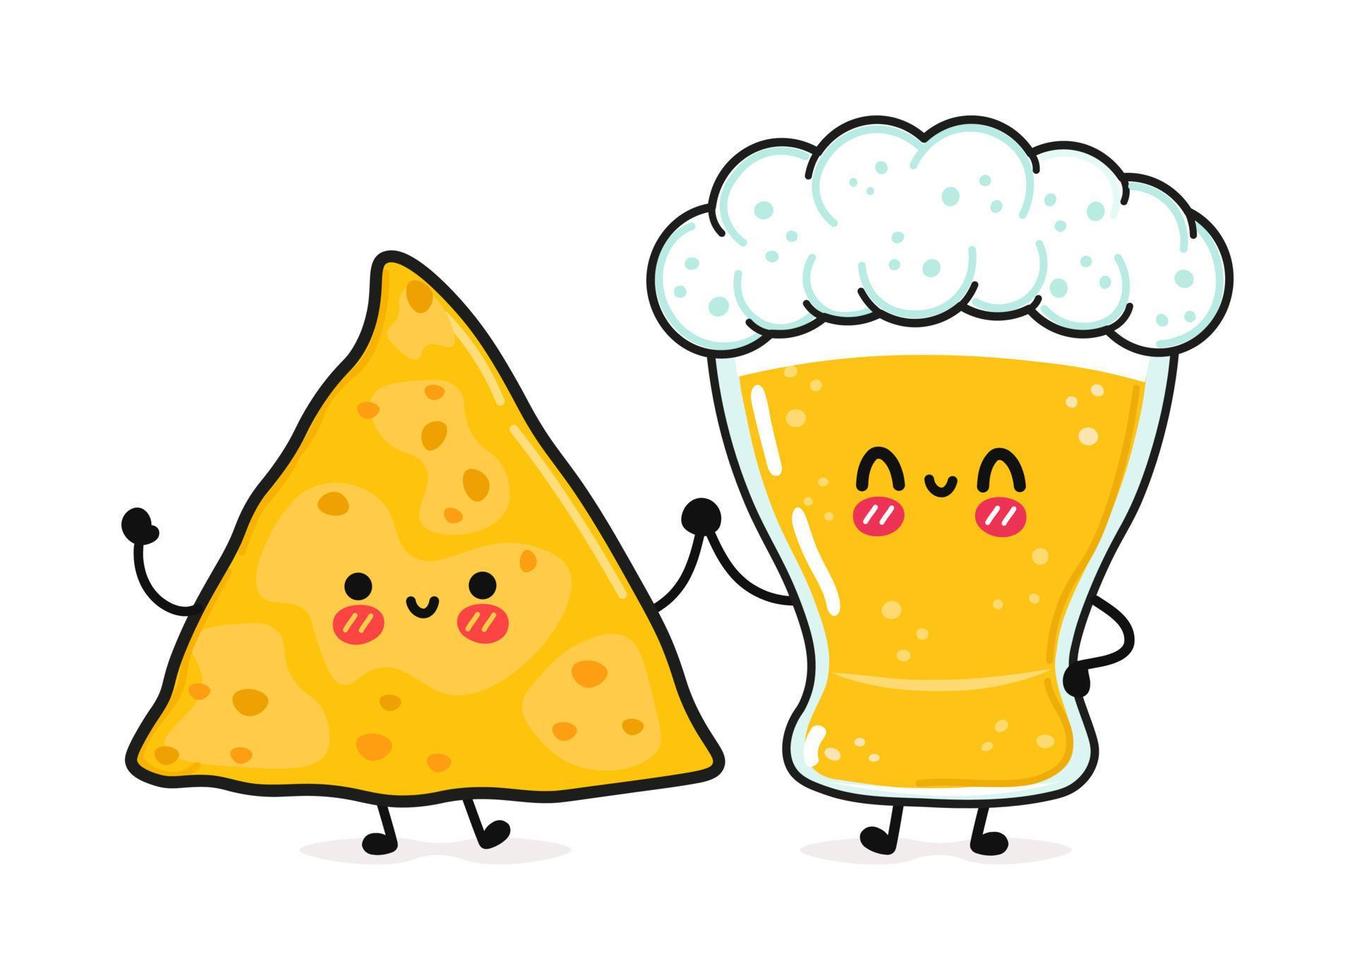 schattig, grappig vrolijk glas bier en nacho's. vector hand getekend kawaii stripfiguren, illustratie pictogram. grappige cartoon glas bier en nacho's mascotte vrienden concept